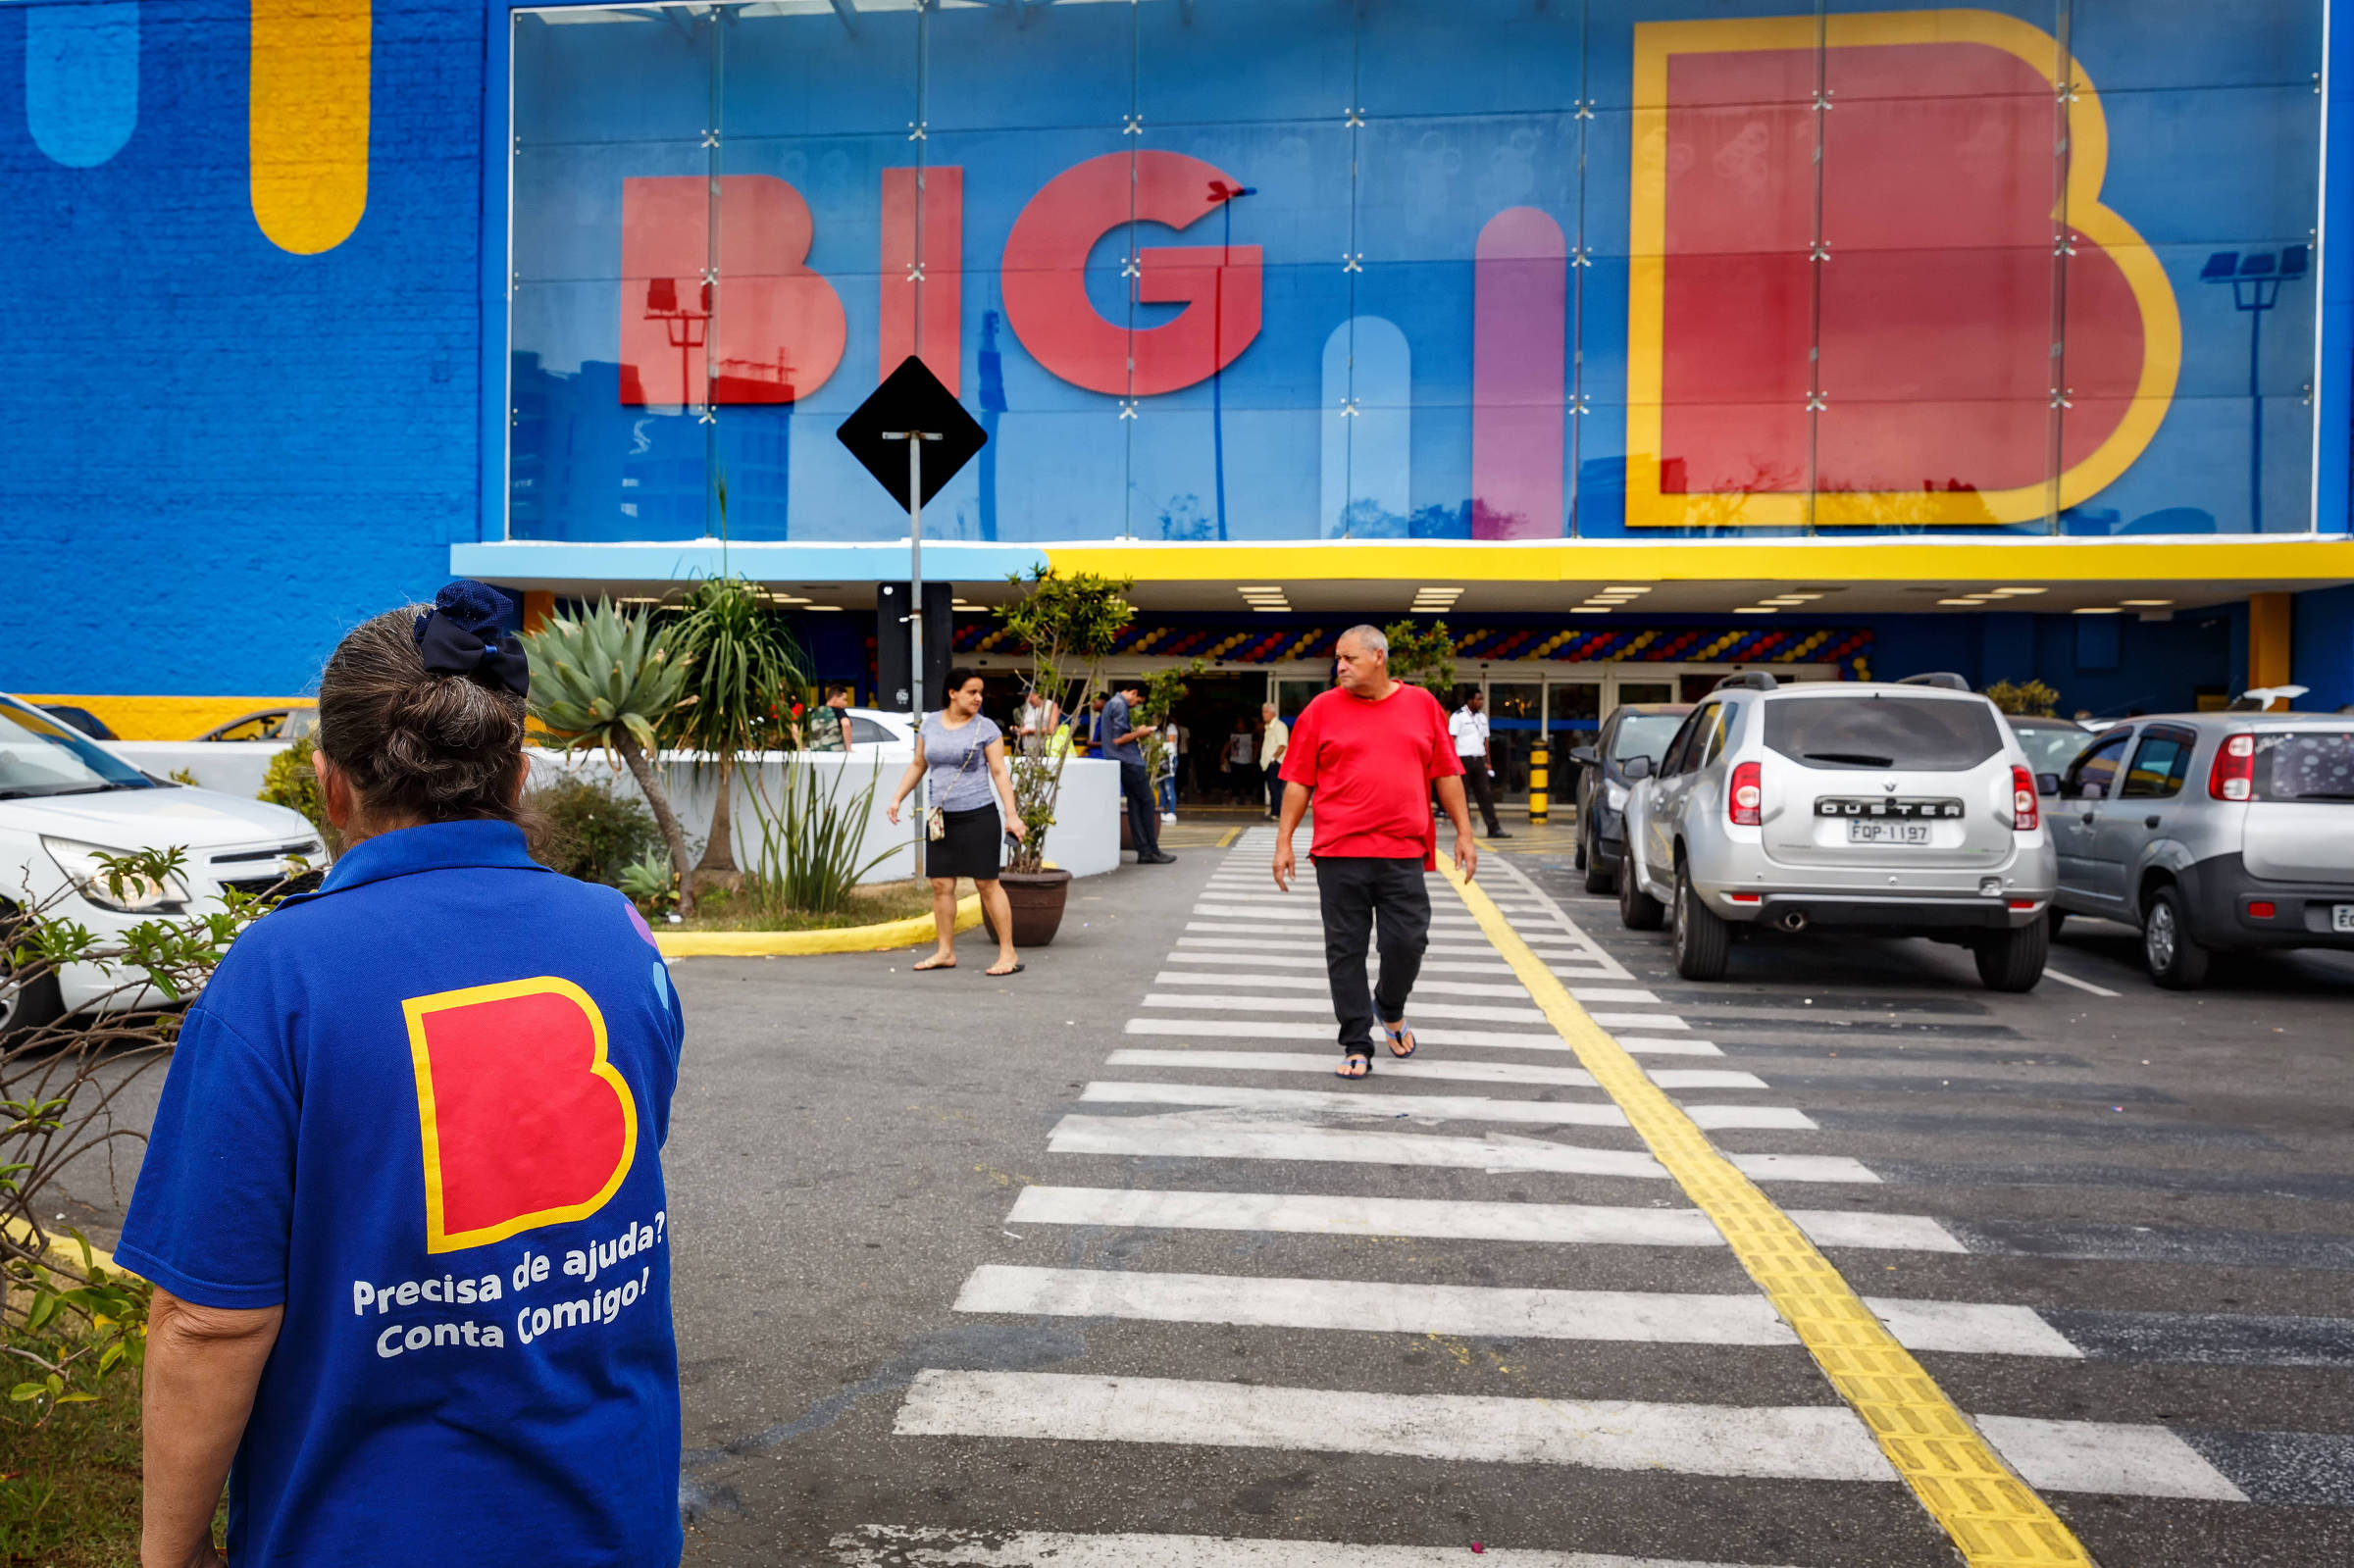 Rede de supermercados Walmart no Brasil mudará de nome para Big -  23/10/2019 - Mercado - Folha